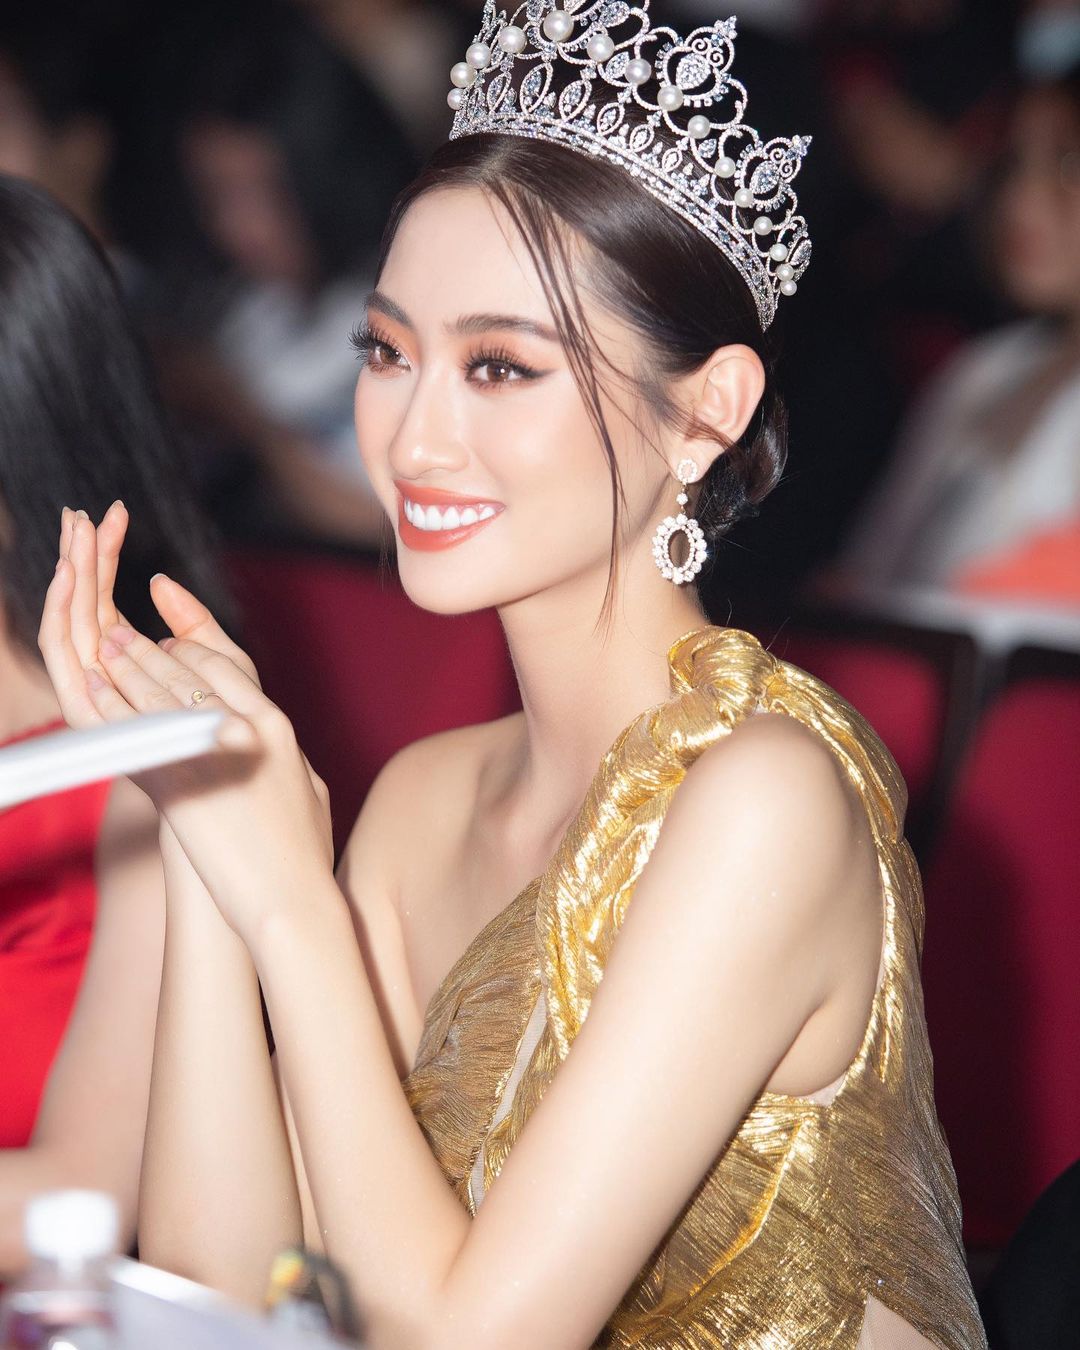 Lương Thùy Linh lên tiếng về tin đồn mua giải Hoa hậu, nhờ mẹ để có profile toàn điểm cao - Ảnh 2